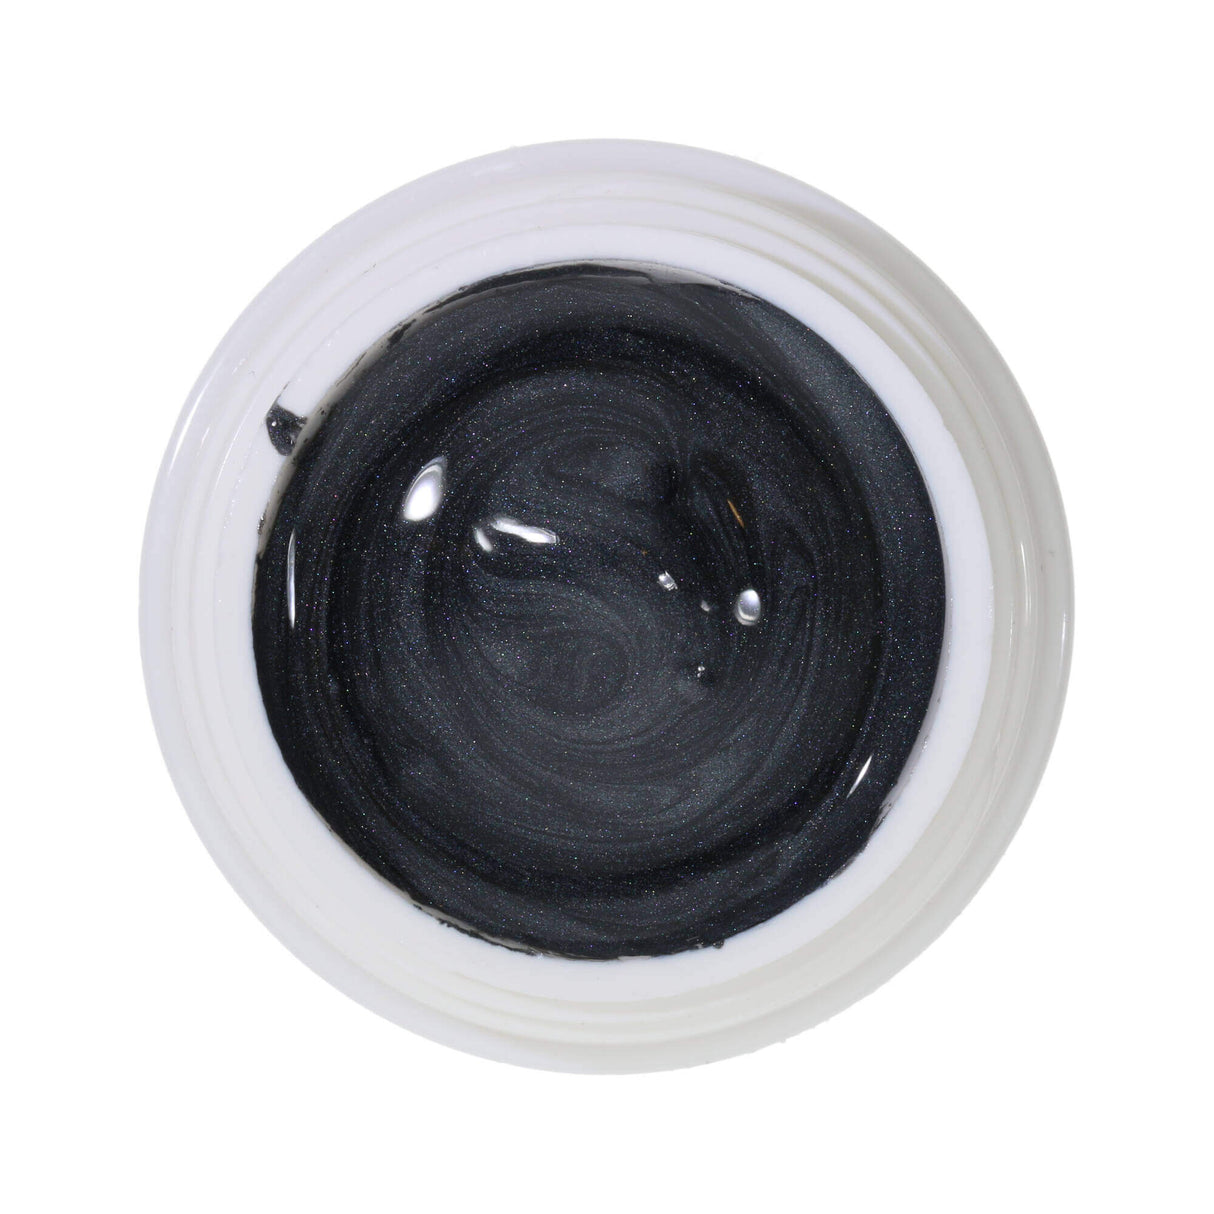 Gel tạo màu # 471 Premium-EFFEKT 5ml đen-xám với ánh kim sa nhẹ nhàng